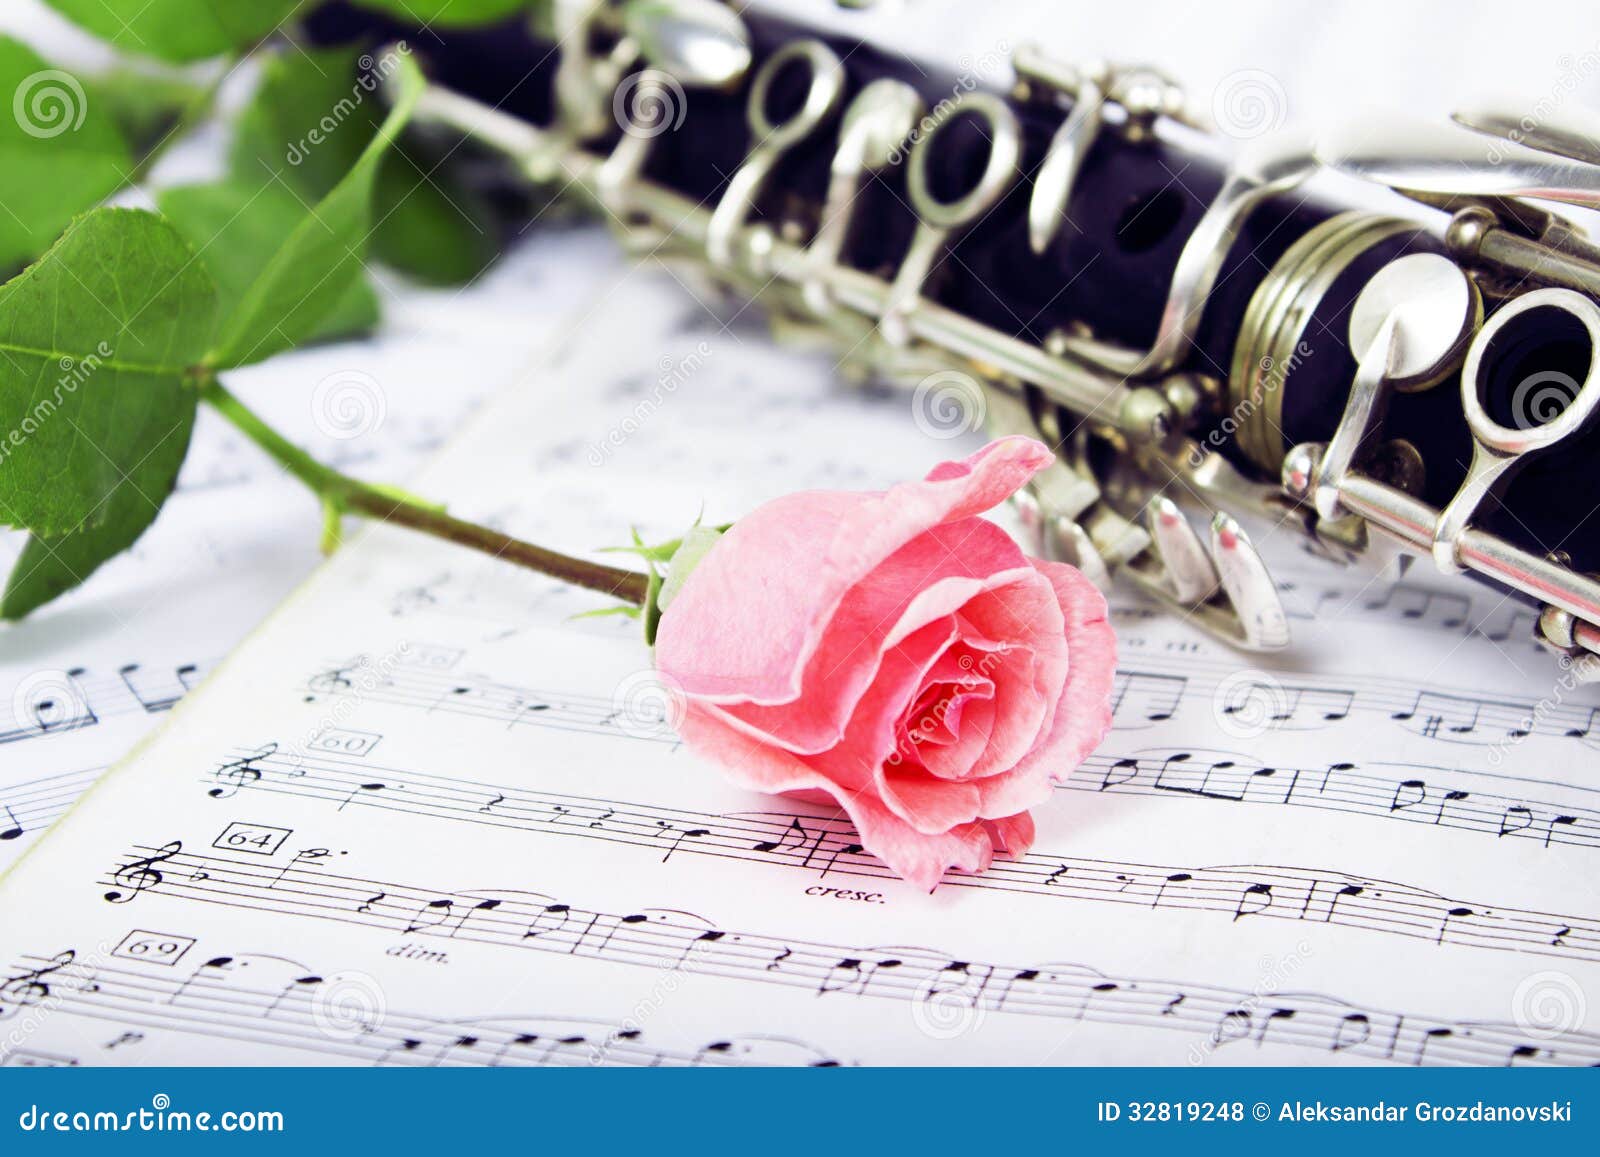 Цветок кларнет. Кларнет в розах. Кларнет фон. Картинки с кларнетом и цветами. Ноты для кларнета.